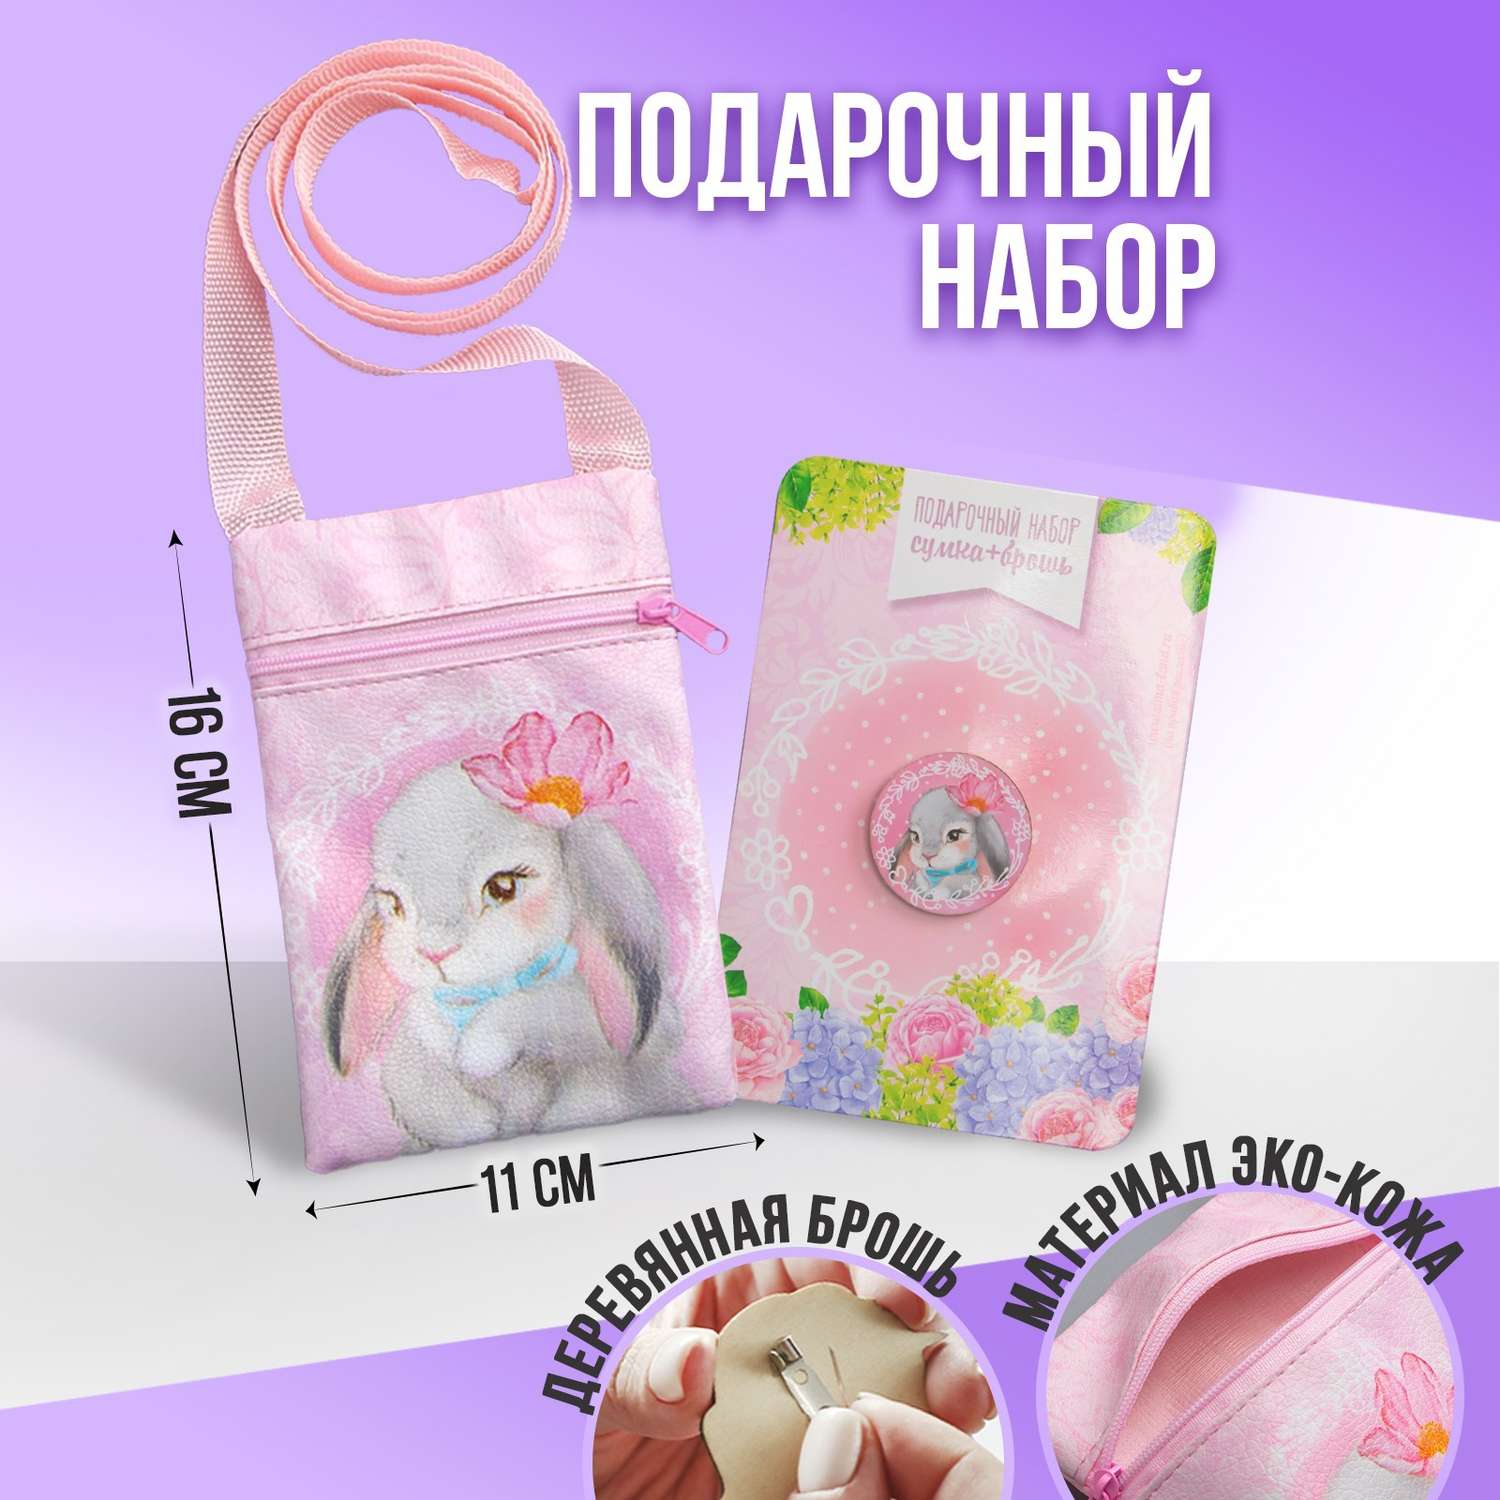 Подарочный набор NAZAMOK сумка и брошь цвет розовый - фото 1